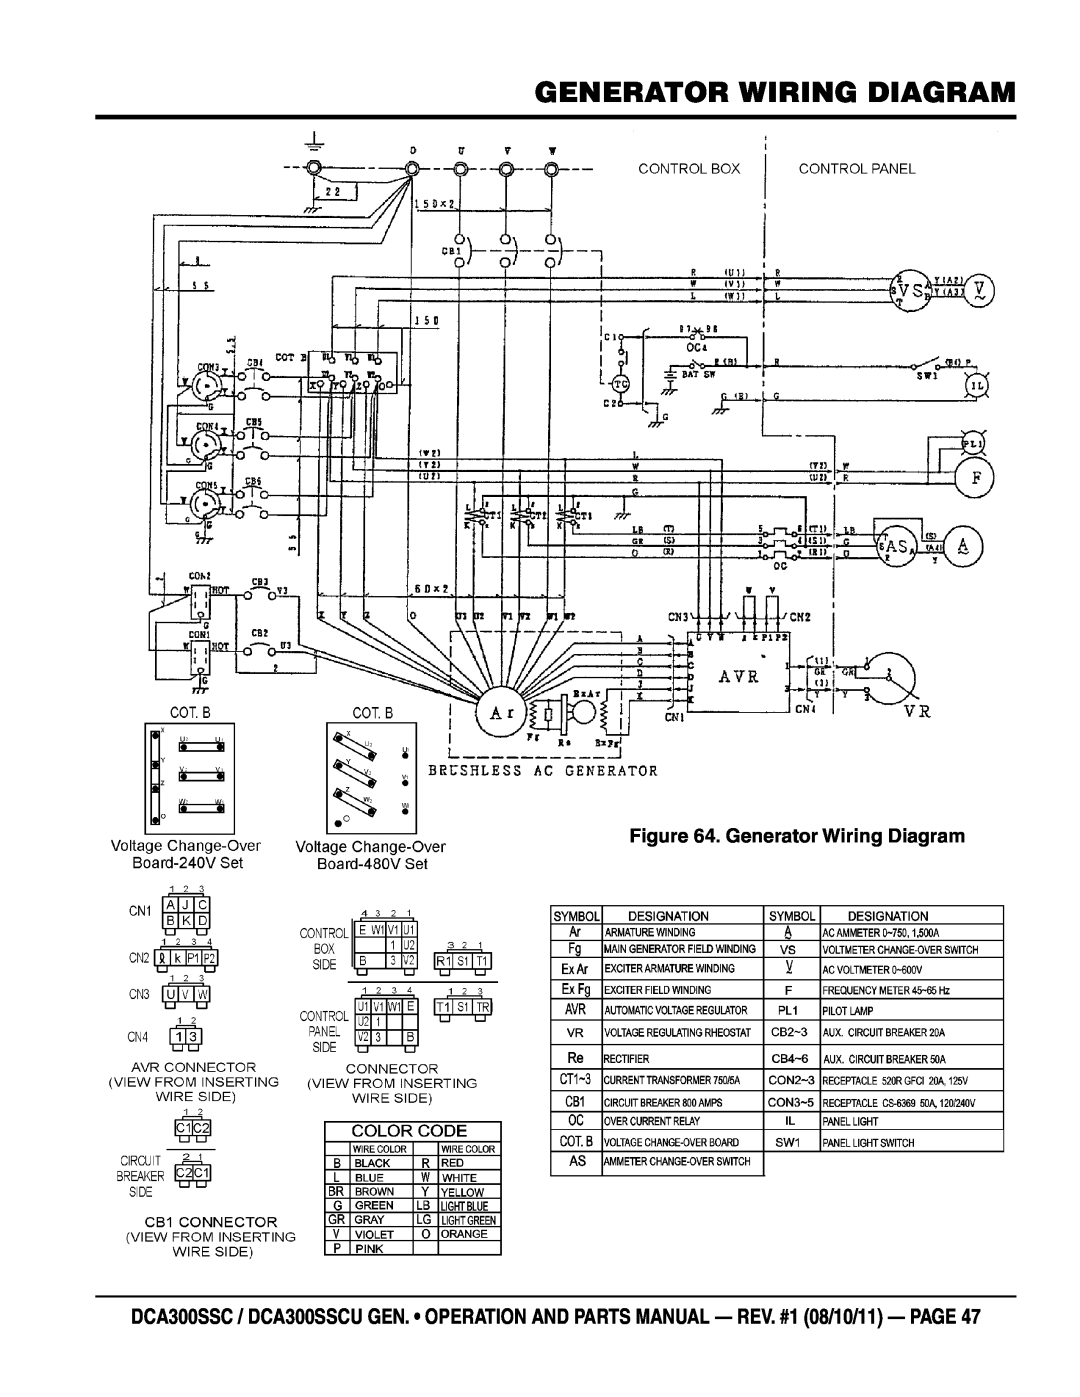 Multiquip DCA300SSCU manual Generator Wiring Diagram 